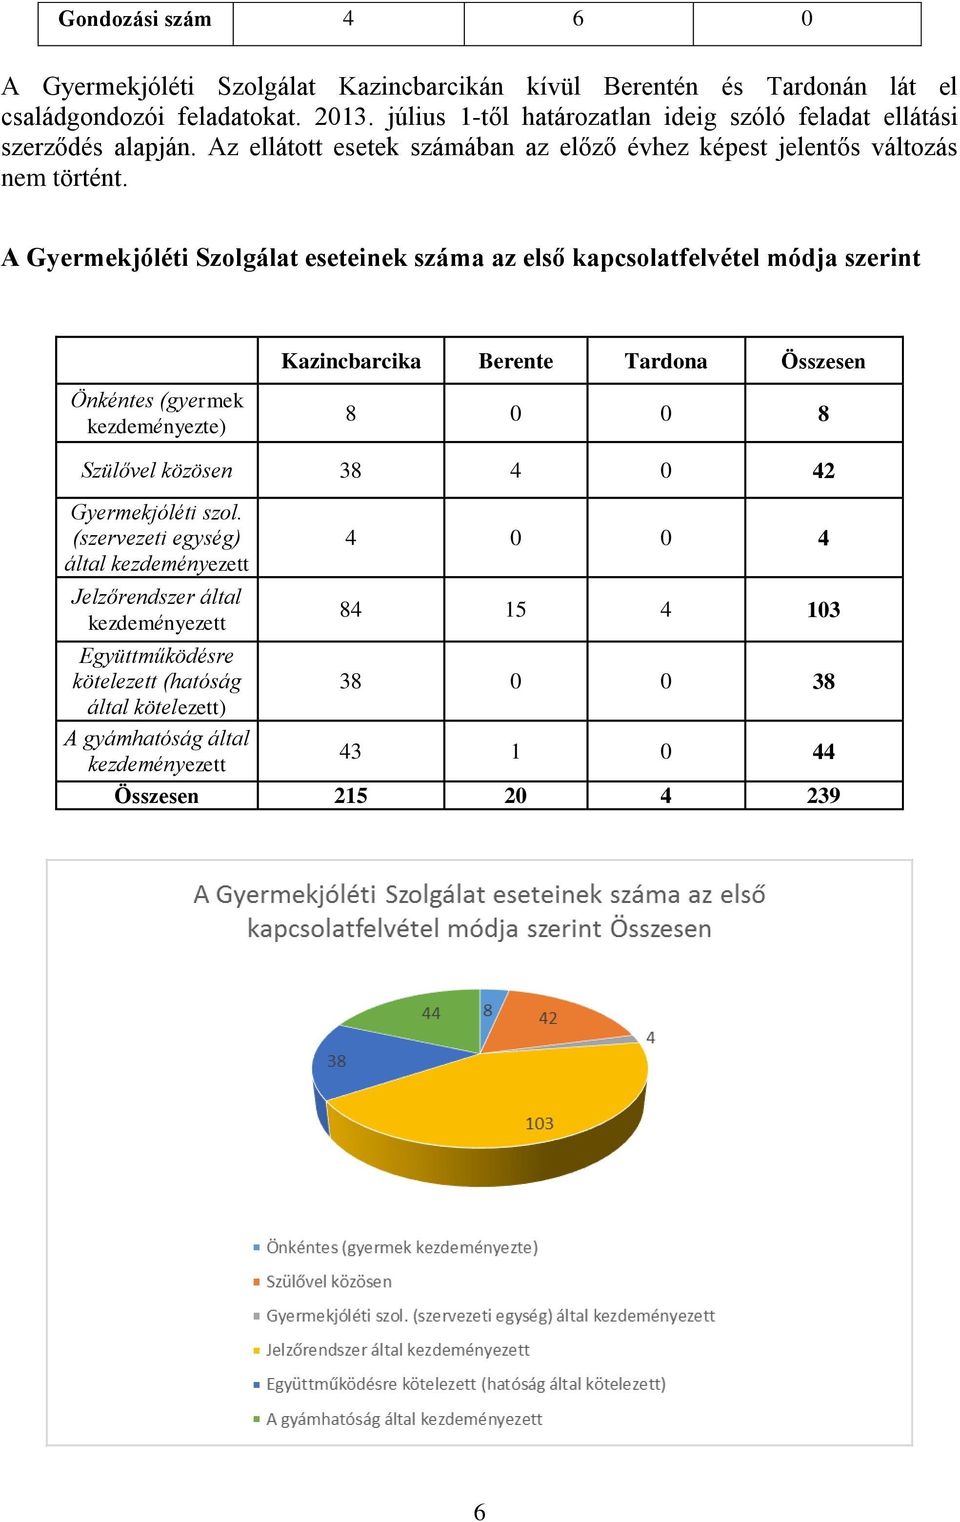 A Gyermekjóléti Szolgálat eseteinek száma az első kapcsolatfelvétel módja szerint Önkéntes (gyermek kezdeményezte) Kazincbarcika Berente Tardona Összesen 8 0 0 8 Szülővel közösen